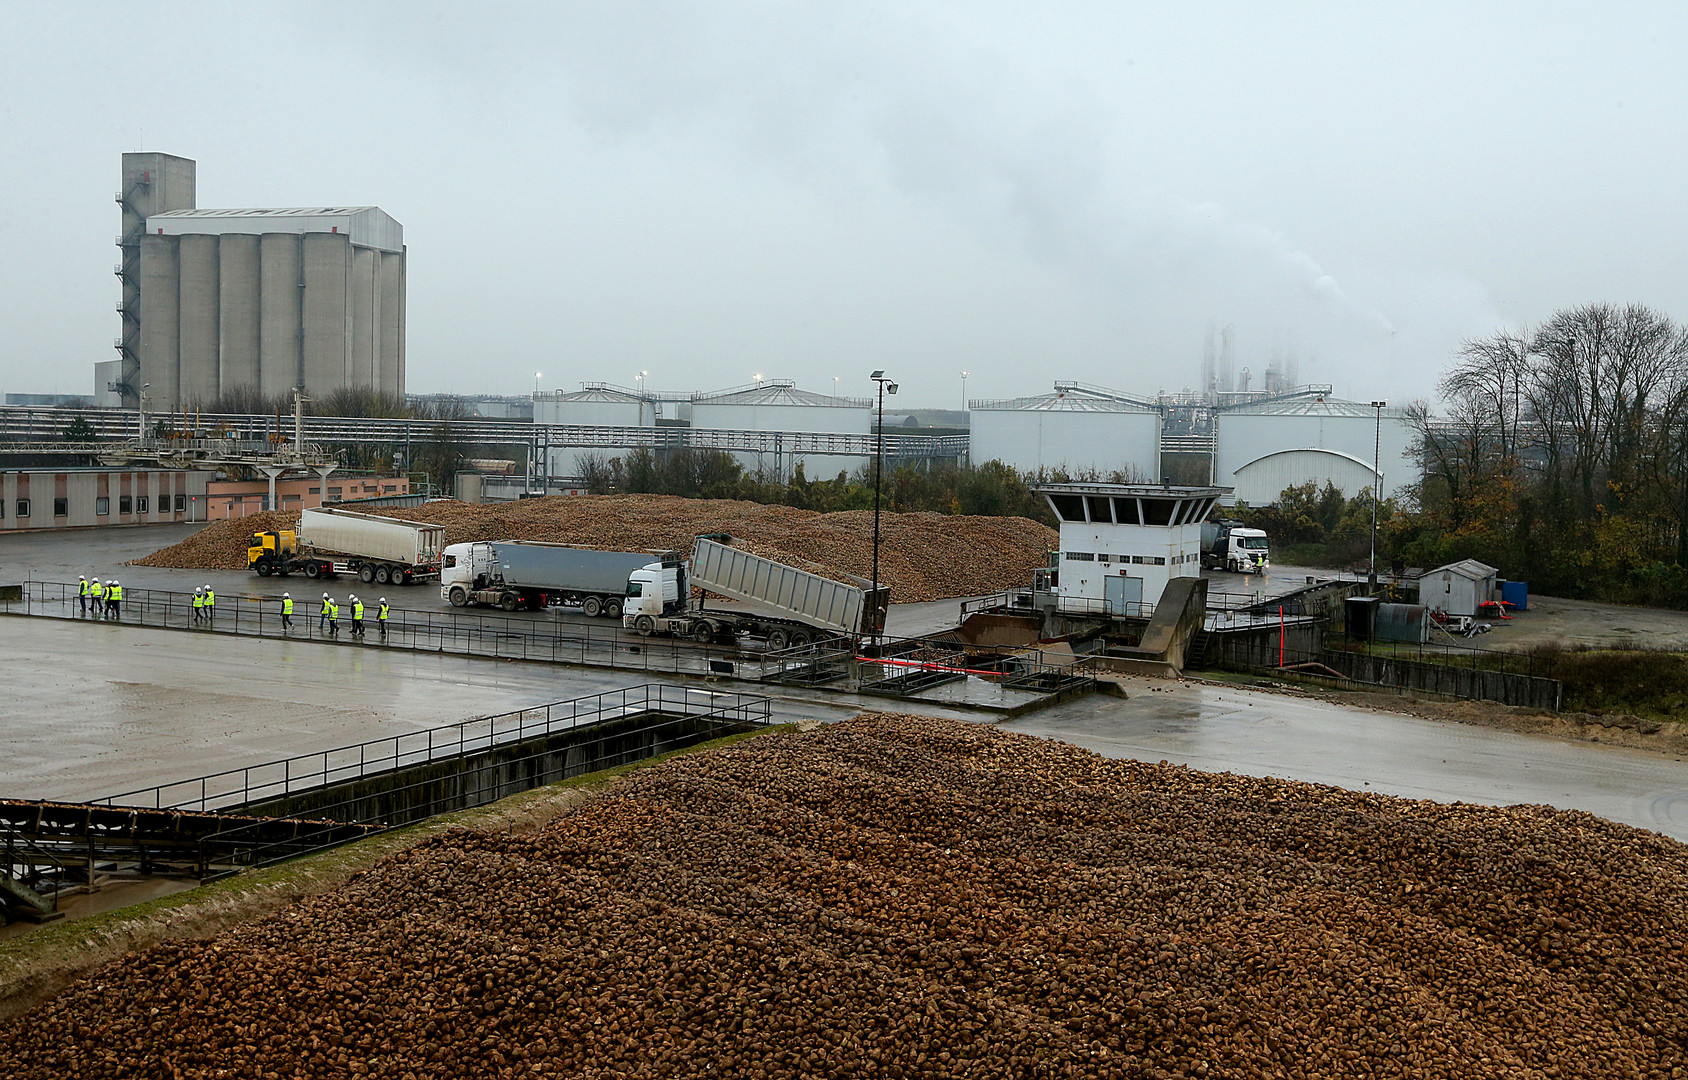 Liberalisierung des Zuckerrübensektors durch EU-Kommission hat fatale Folgen für Bauern in der EU